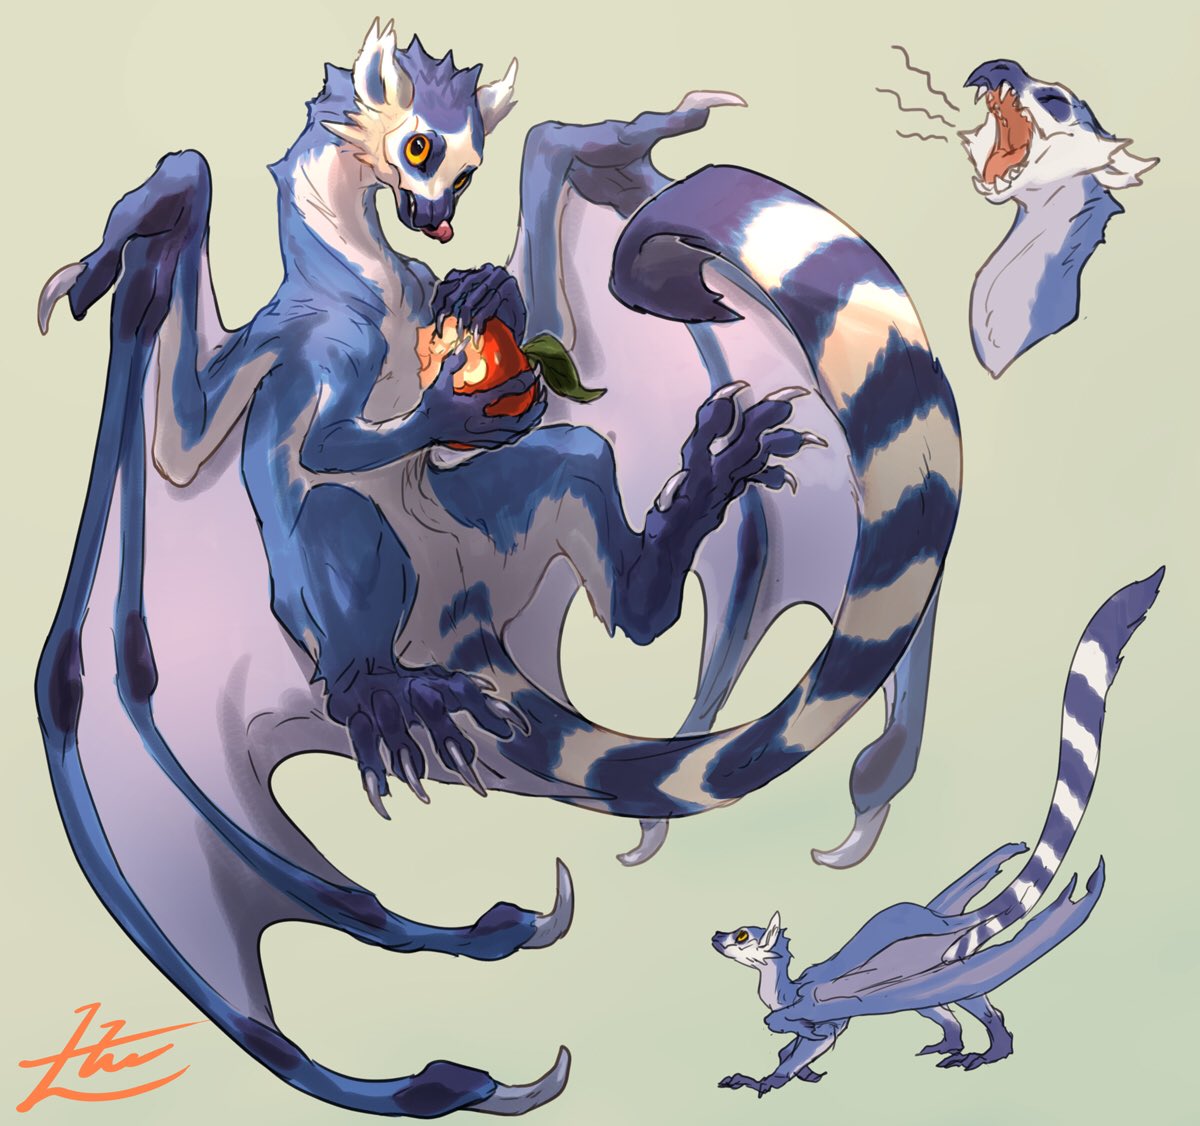 「Lemur Dragon? 」|山村れぇ/Lē Yamamuraのイラスト